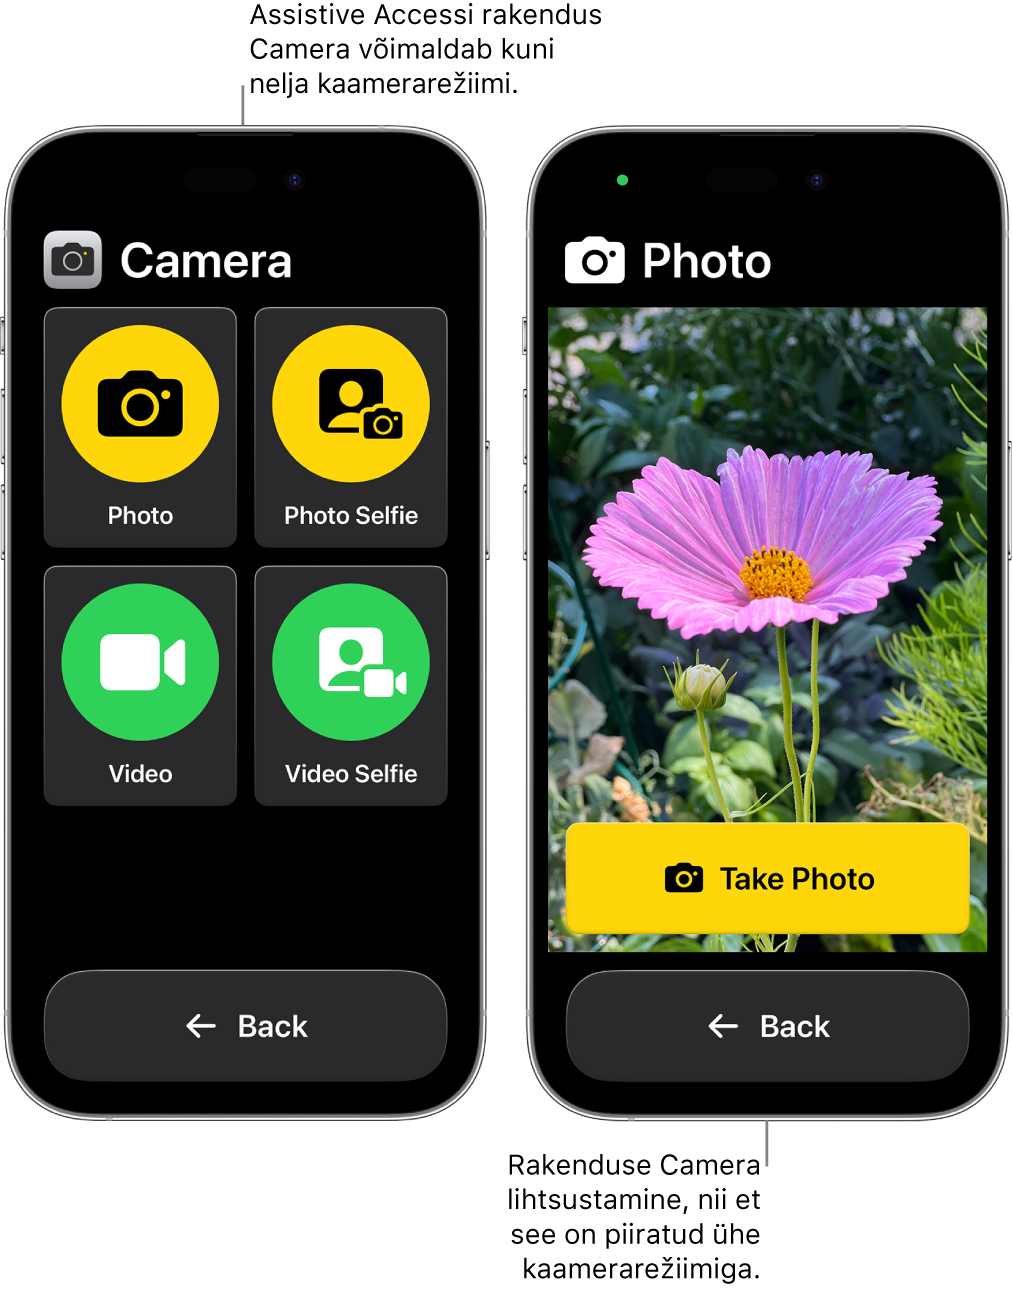 Kaks iPhone’i, milles kasutatakse Assistive Accessi. Ühes iPhone’is on rakendus Camera selliste kasutaja valitavate kaamerarežiimidega nagu Video või Photo Selfie. Teises iPhone’is on rakendus Camera ainult ühe fotode tegemise režiimiga.